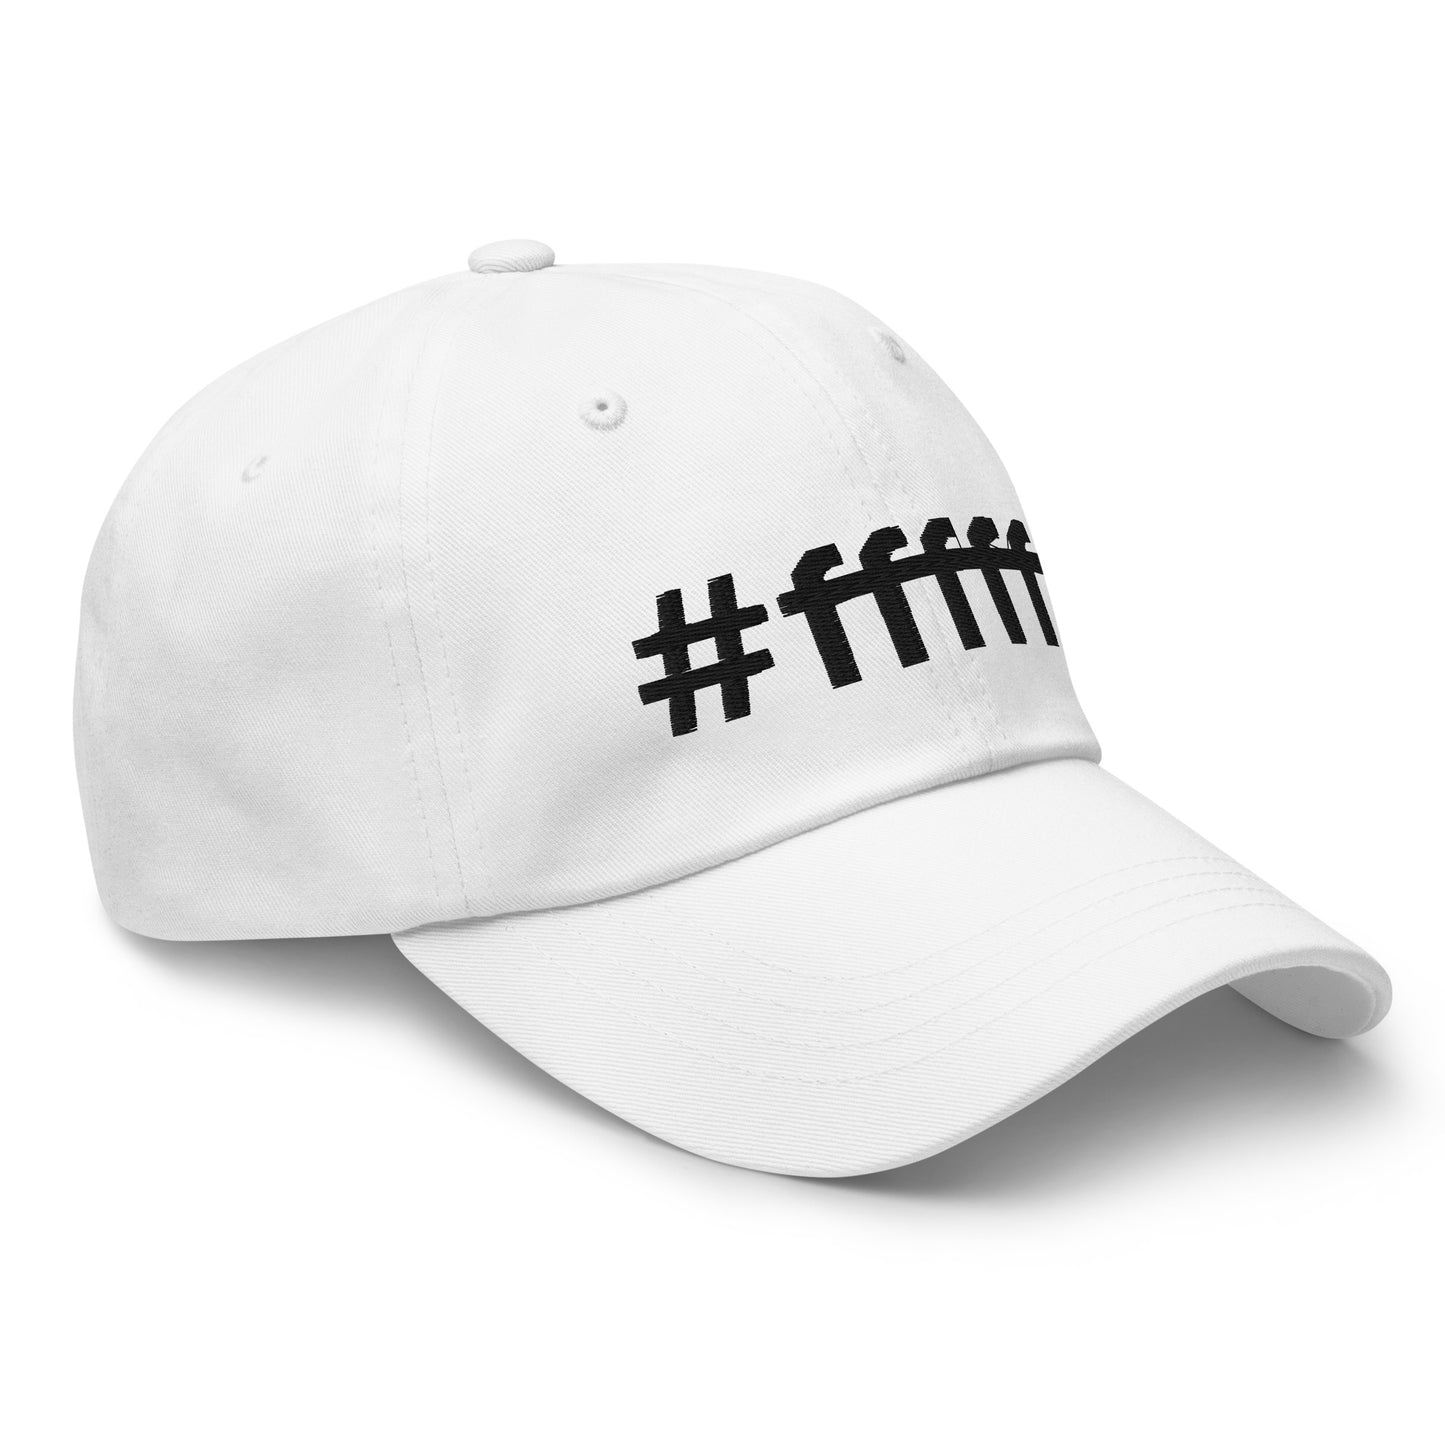 #ffffff Embroidered Dad hat